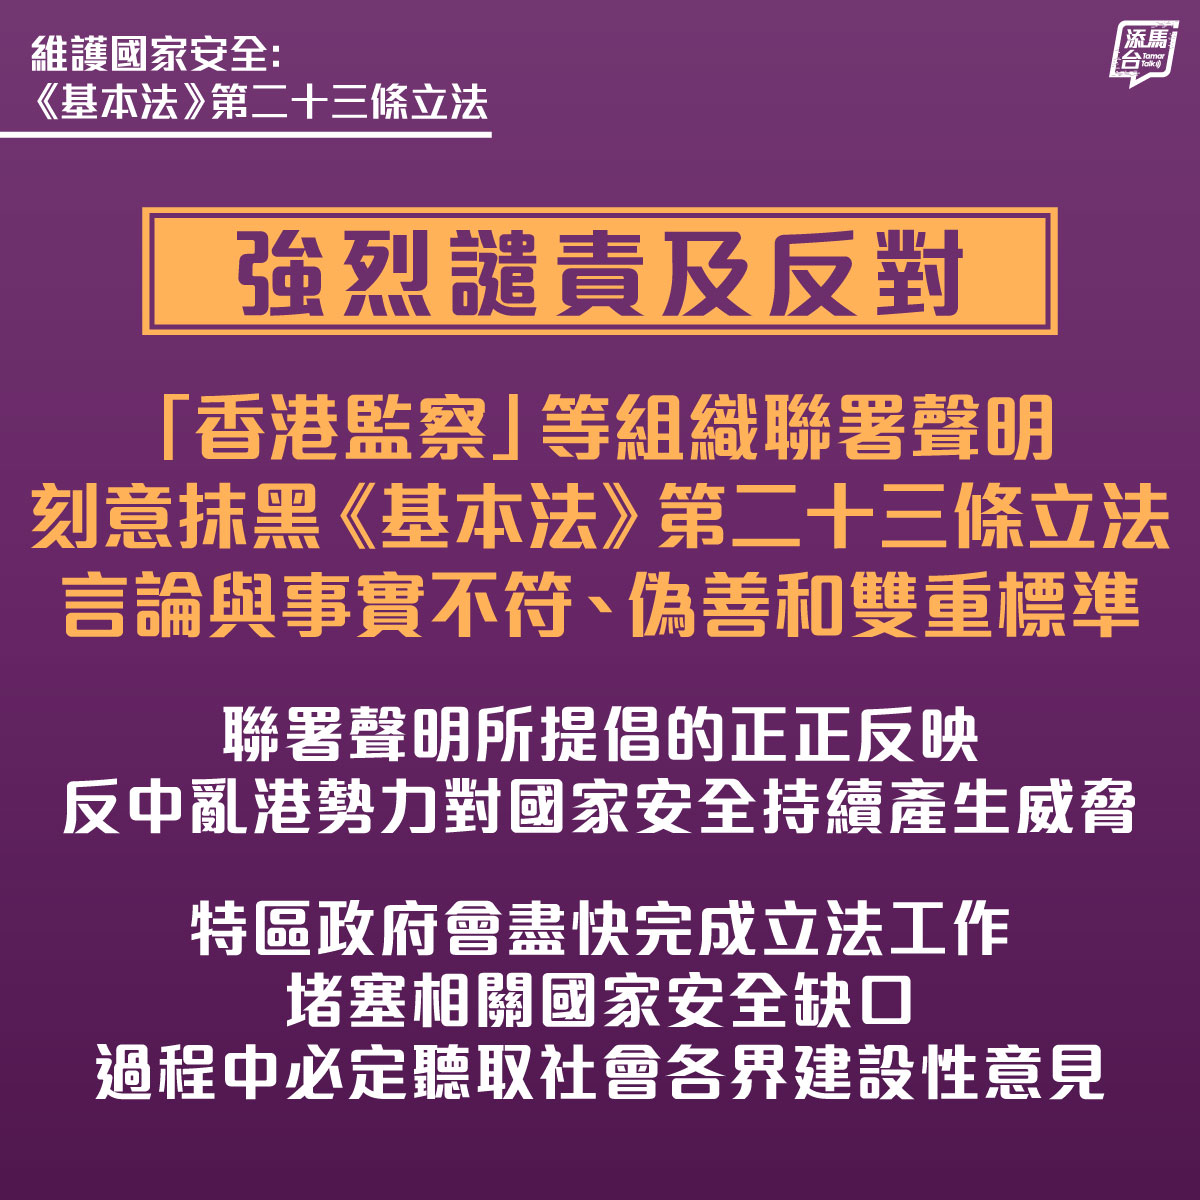 【强烈谴责「香港监察」等组织失实言论】特区政府强烈谴责及反对「香港监察」和其他组织的联署声明，刻意抹黑《基本法》第23条立法，言论与事实全然不符。